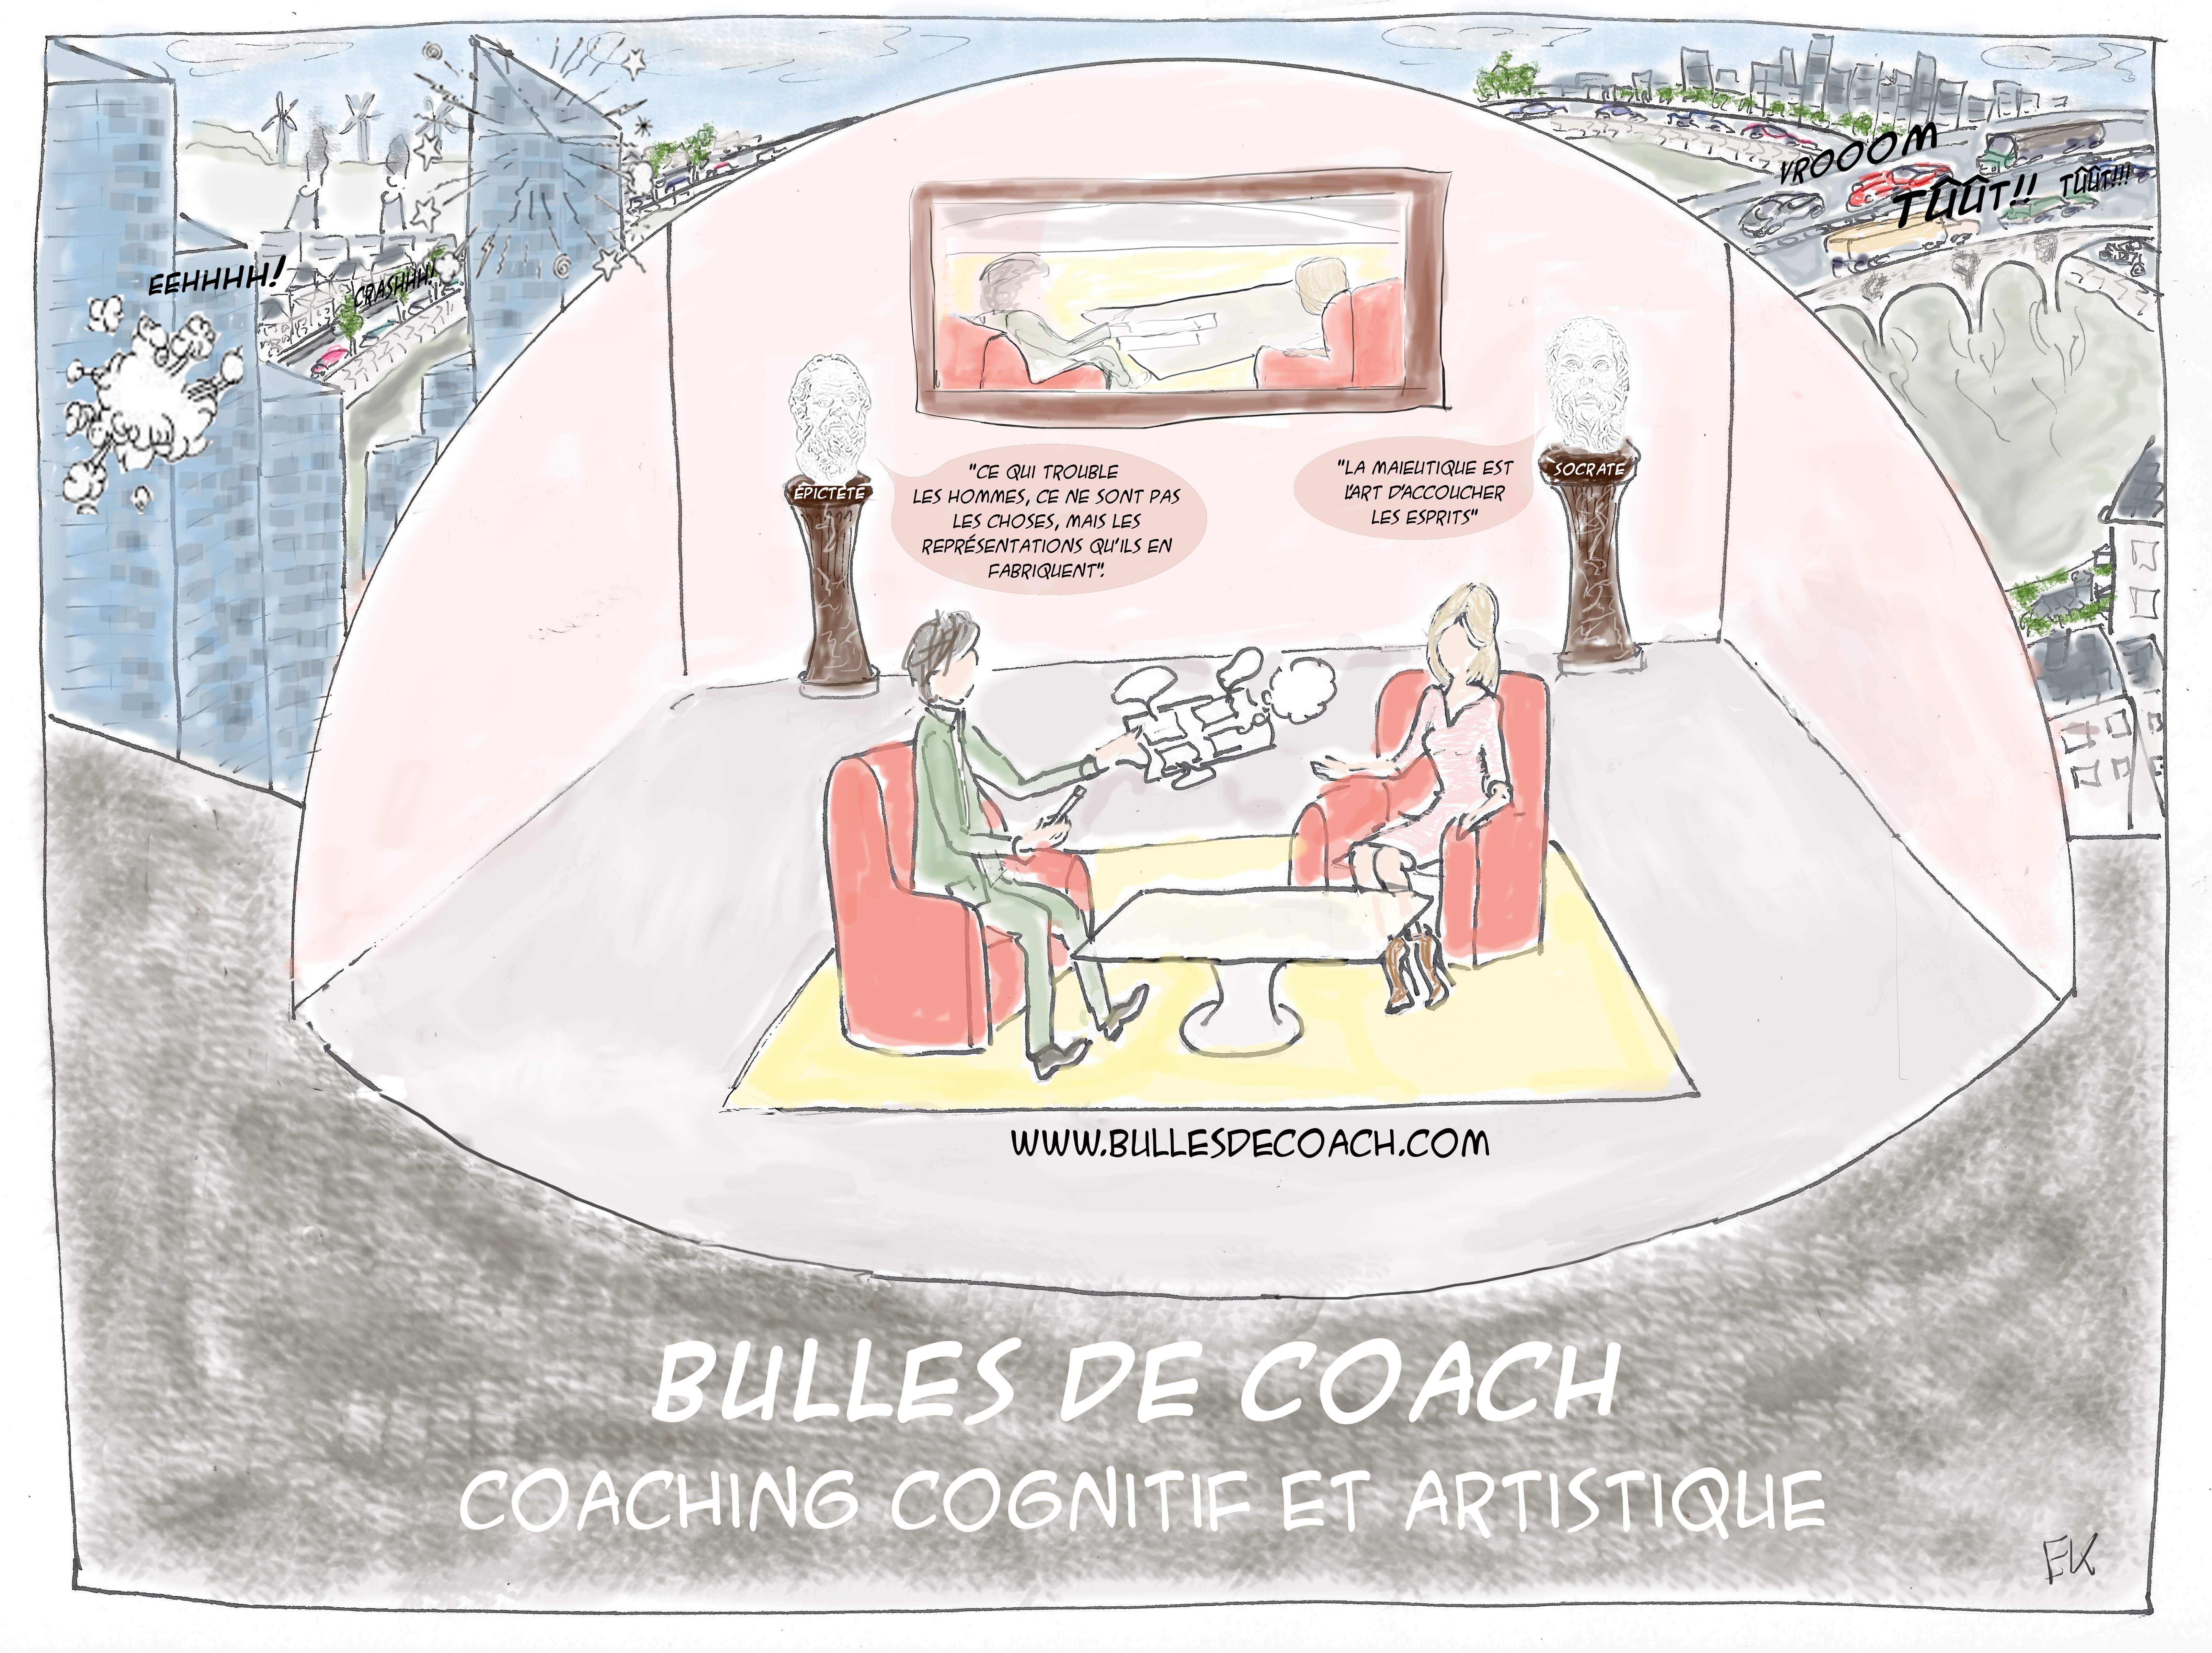 Bulles de Coach (Coaching)